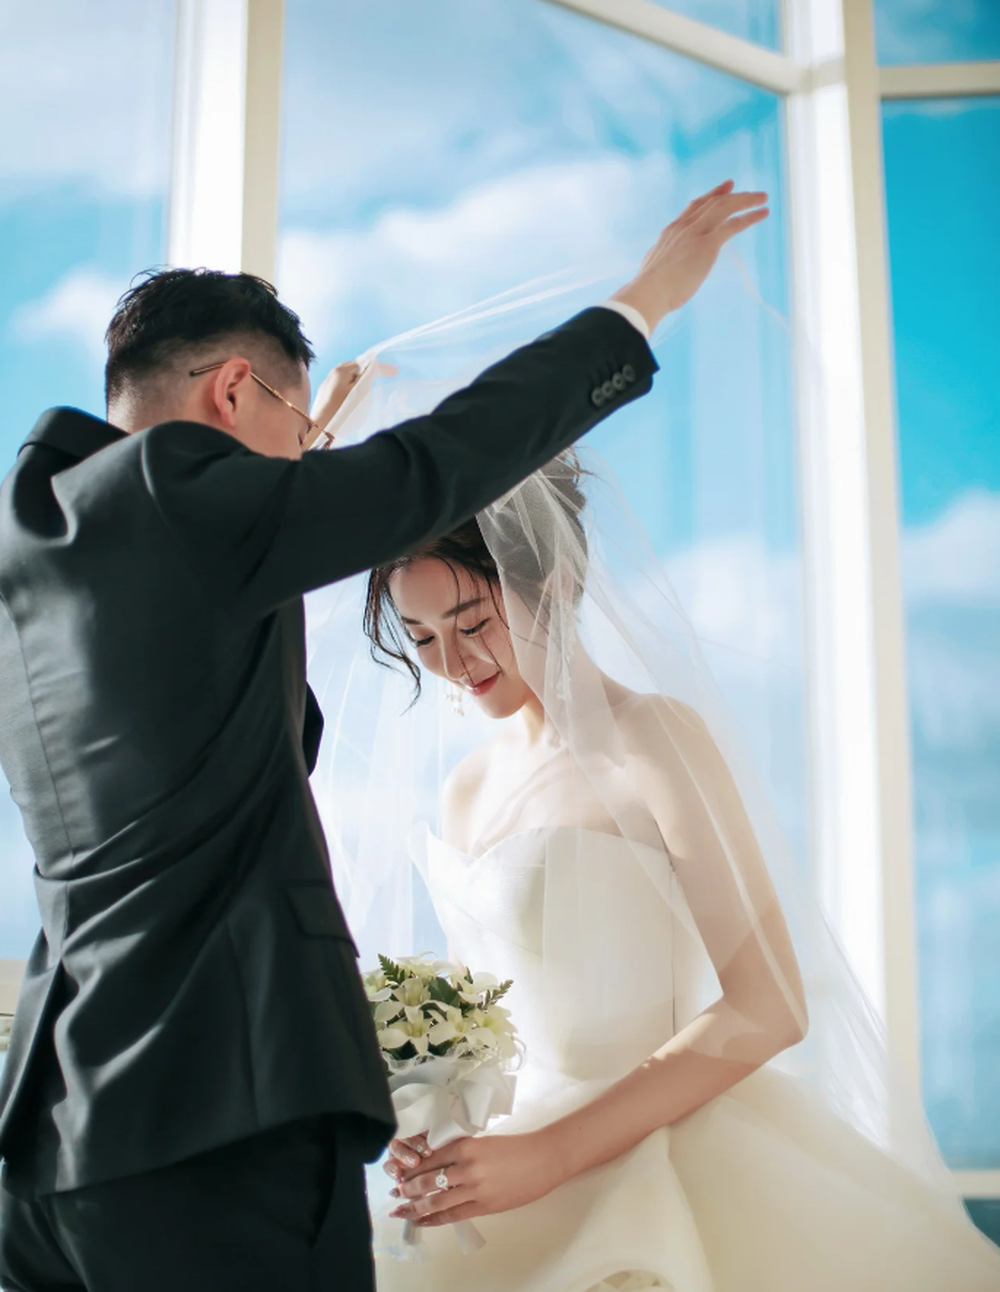 Hôn nhân của “phú bà” Đào Hỷ Nhi: Tổ chức cưới riêng tư ở Nhật, chồng ít lên sóng vì sợ fan vợ bỏ chạy - Ảnh 5.